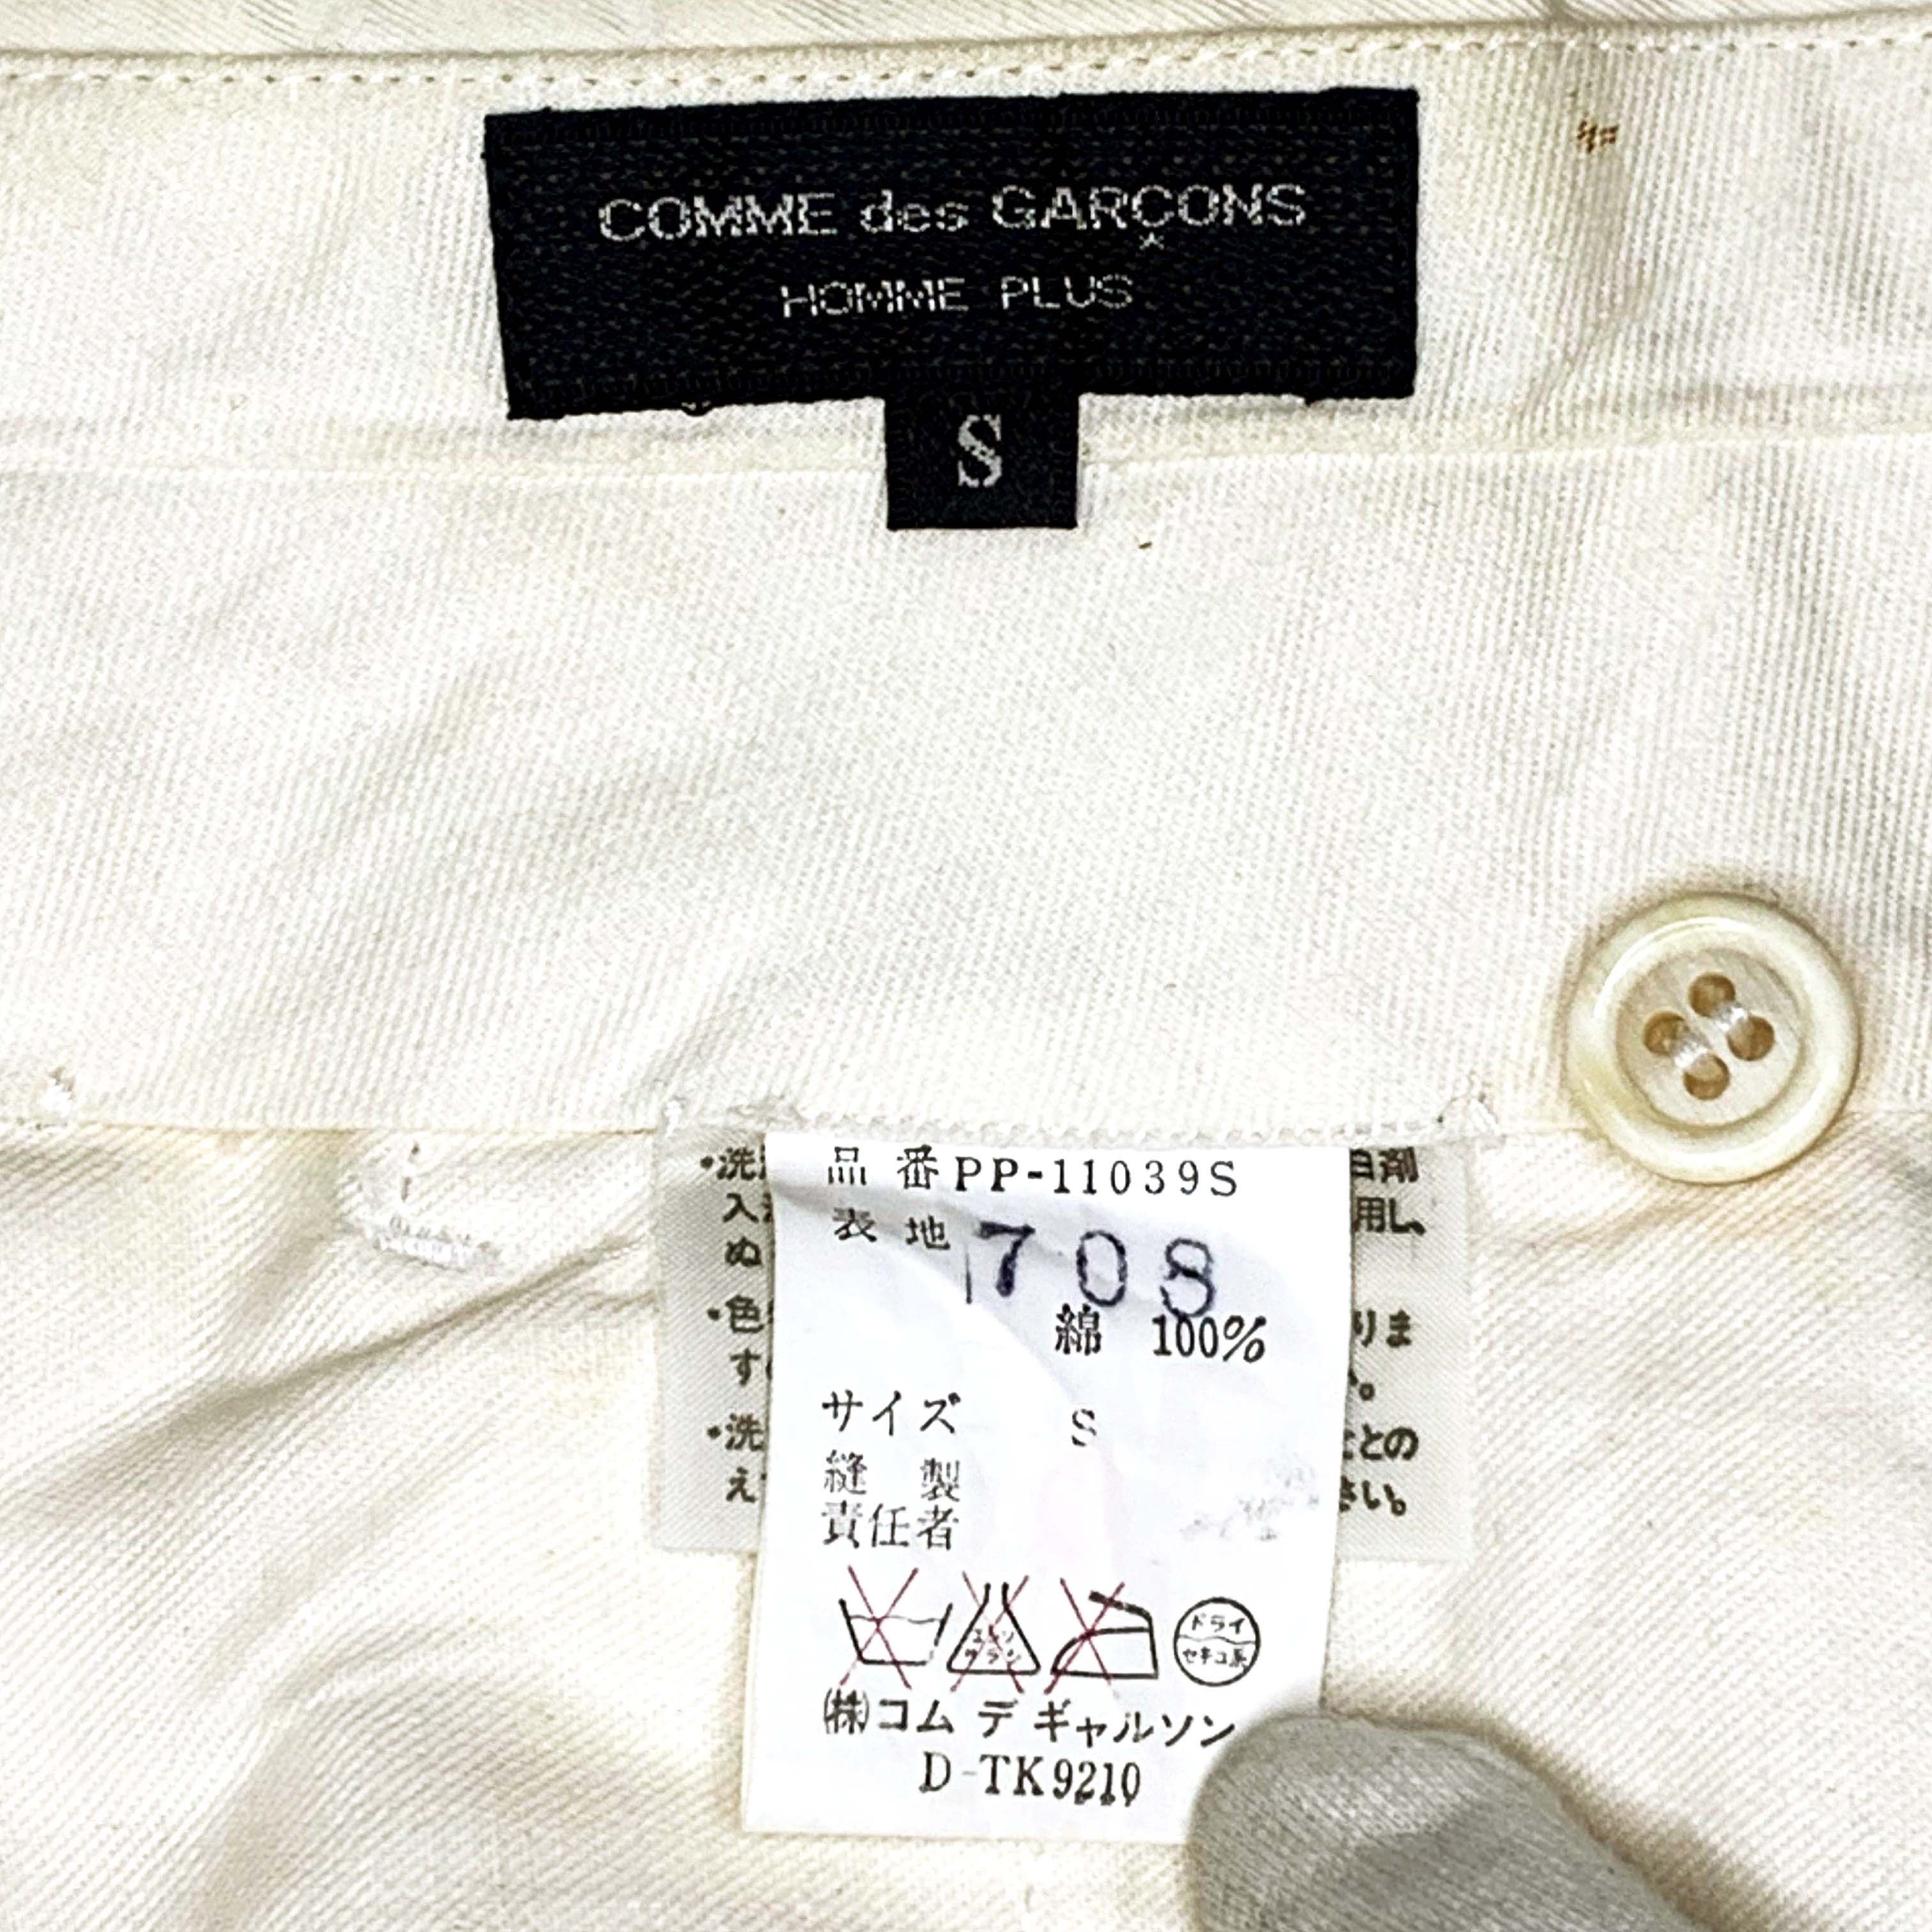 SS87 Short Acetate Jacket & Cotton Pants - 12